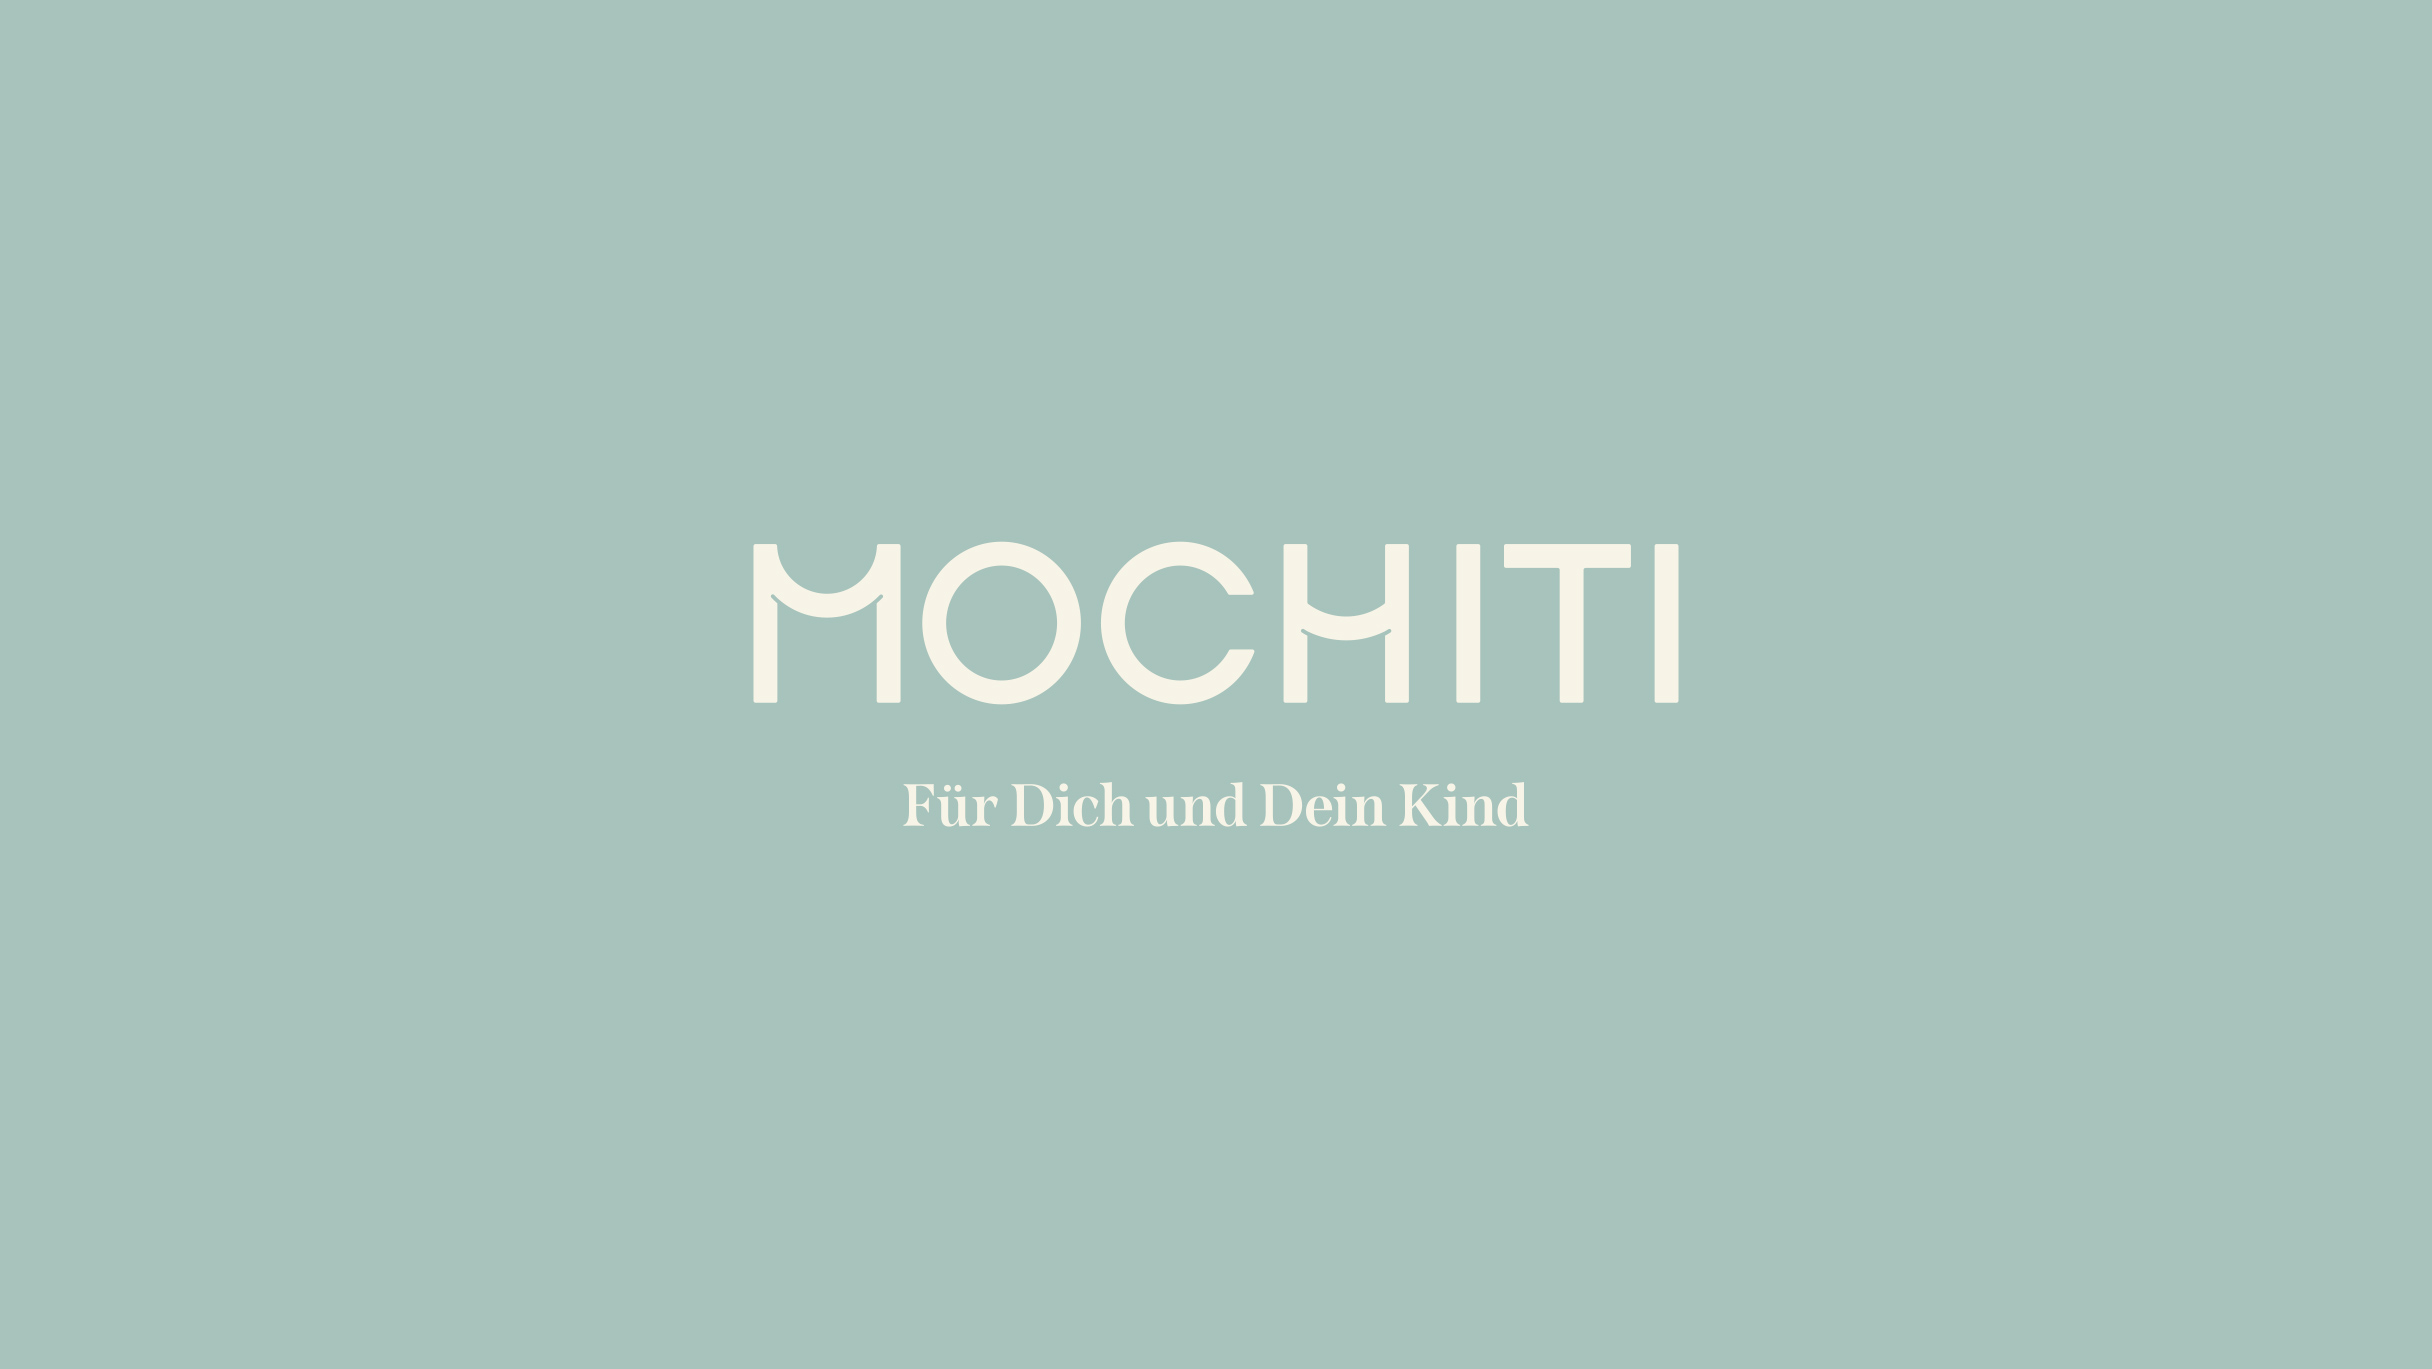 Weißes Mochiti Logo sowie Schriftzug "Für Dich und Dein Kind"auf hellem, tükis-farbenen Hintergrund